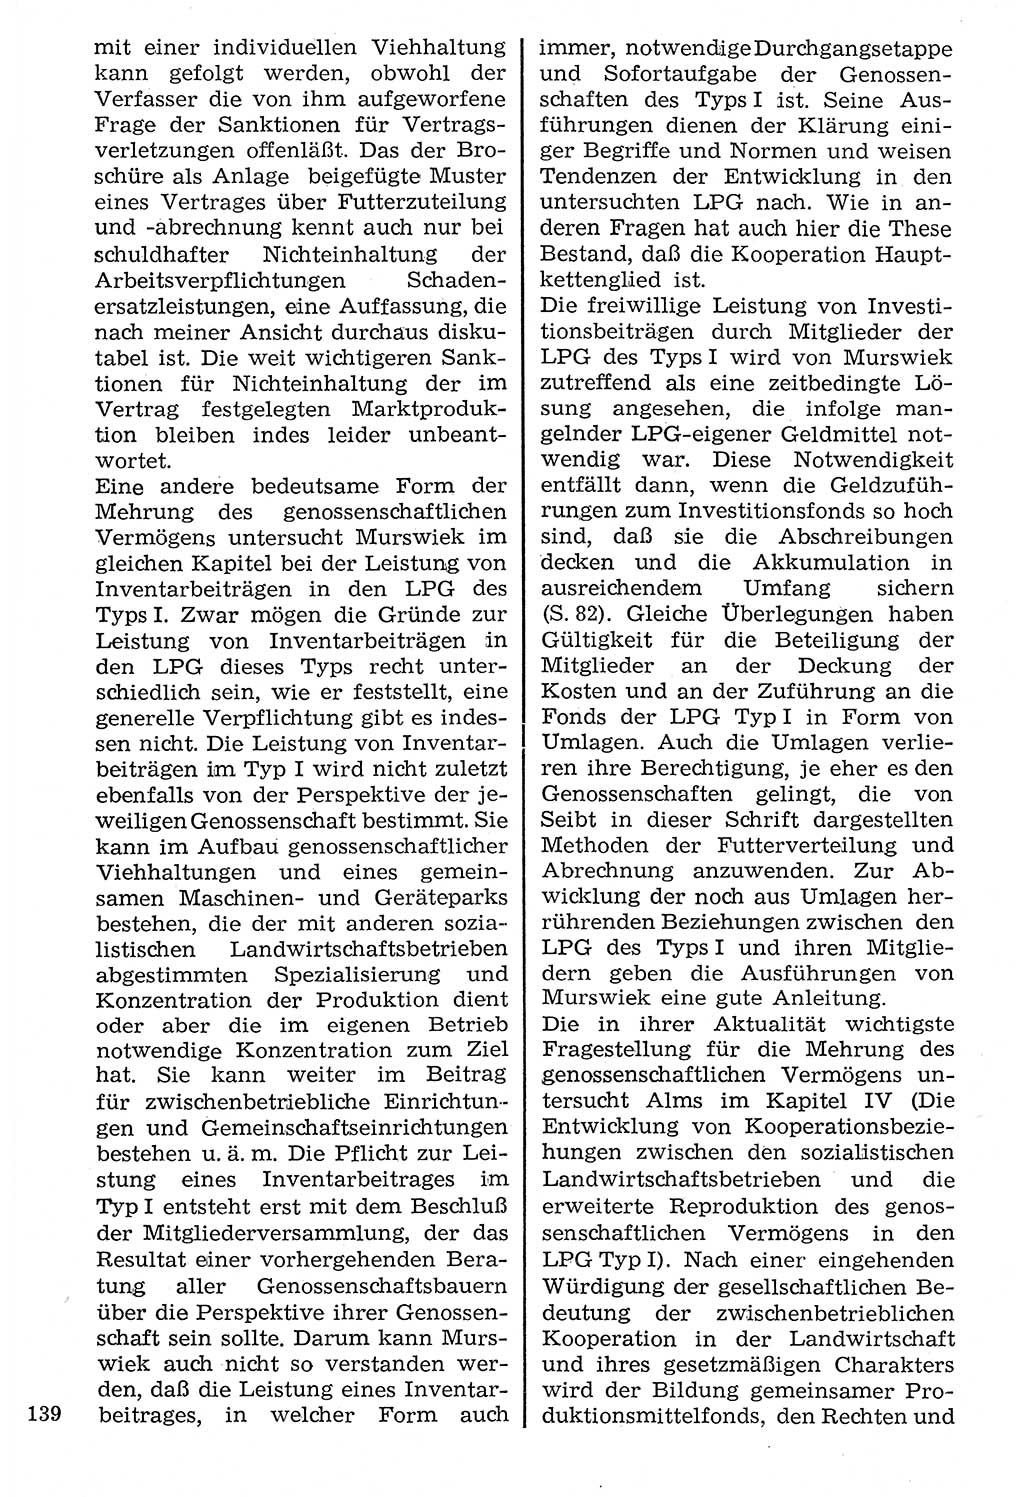 Staat und Recht (StuR), 17. Jahrgang [Deutsche Demokratische Republik (DDR)] 1968, Seite 139 (StuR DDR 1968, S. 139)